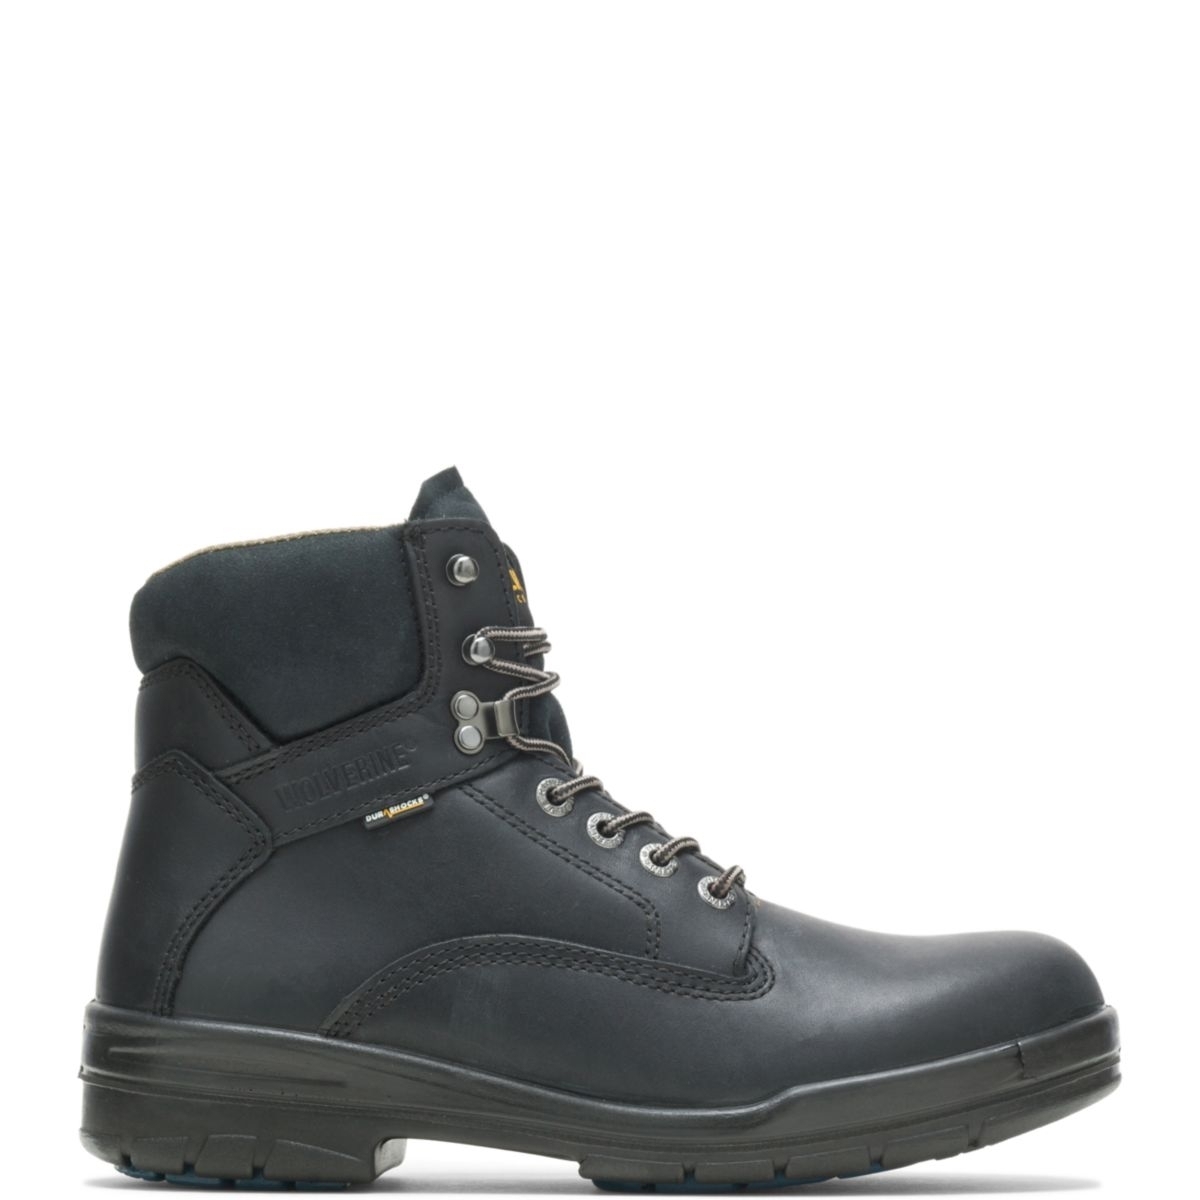 WOLVERINE Men's 6 DuraShocksÂ® Slip Resistant Direct-Attached Lined Soft Toe Work Boot Black - W03123 14 WIDE BLACK - BLACK, 7